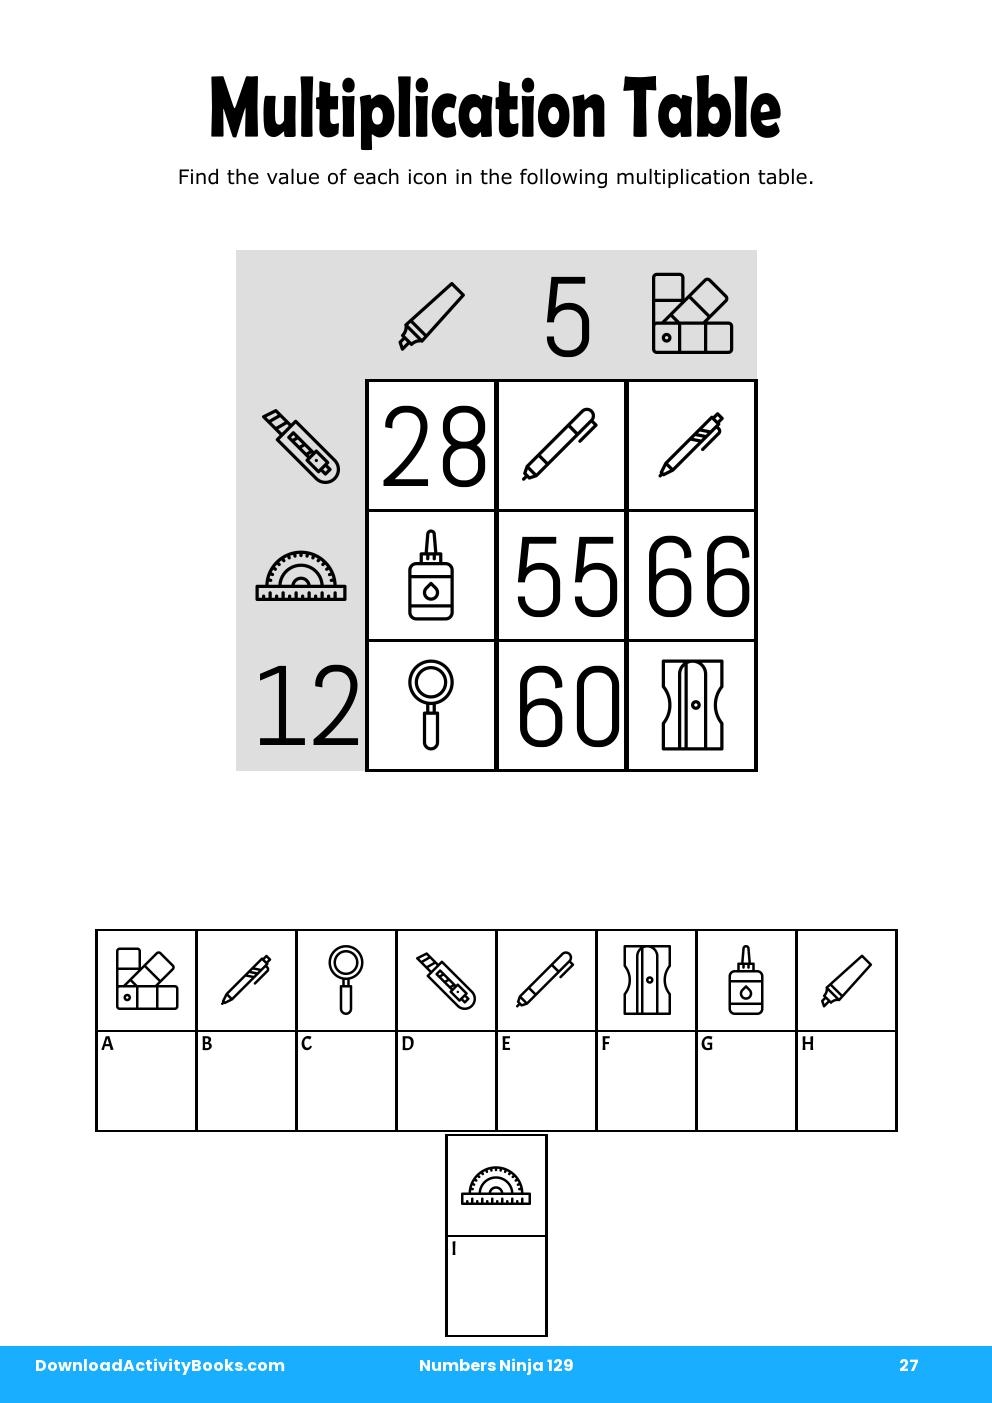 Multiplication Table in Numbers Ninja 129